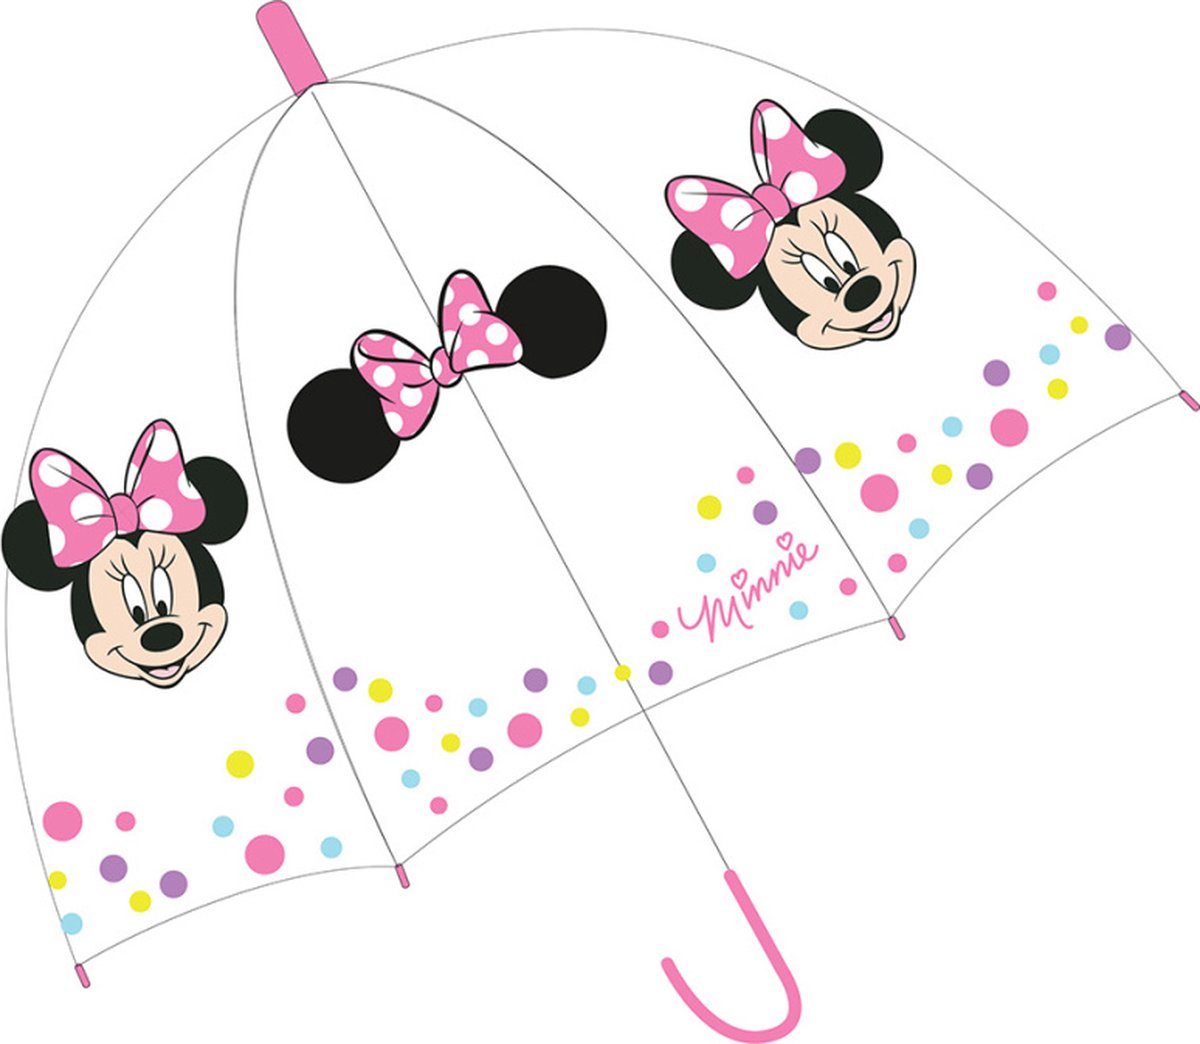 BONNYCO Parapluie Anti Tempete Enfant Minnie Mouse Parapluie Pliant pour  Sac, Sac à Dos ou Voyage Parapluie Compact avec Struct327